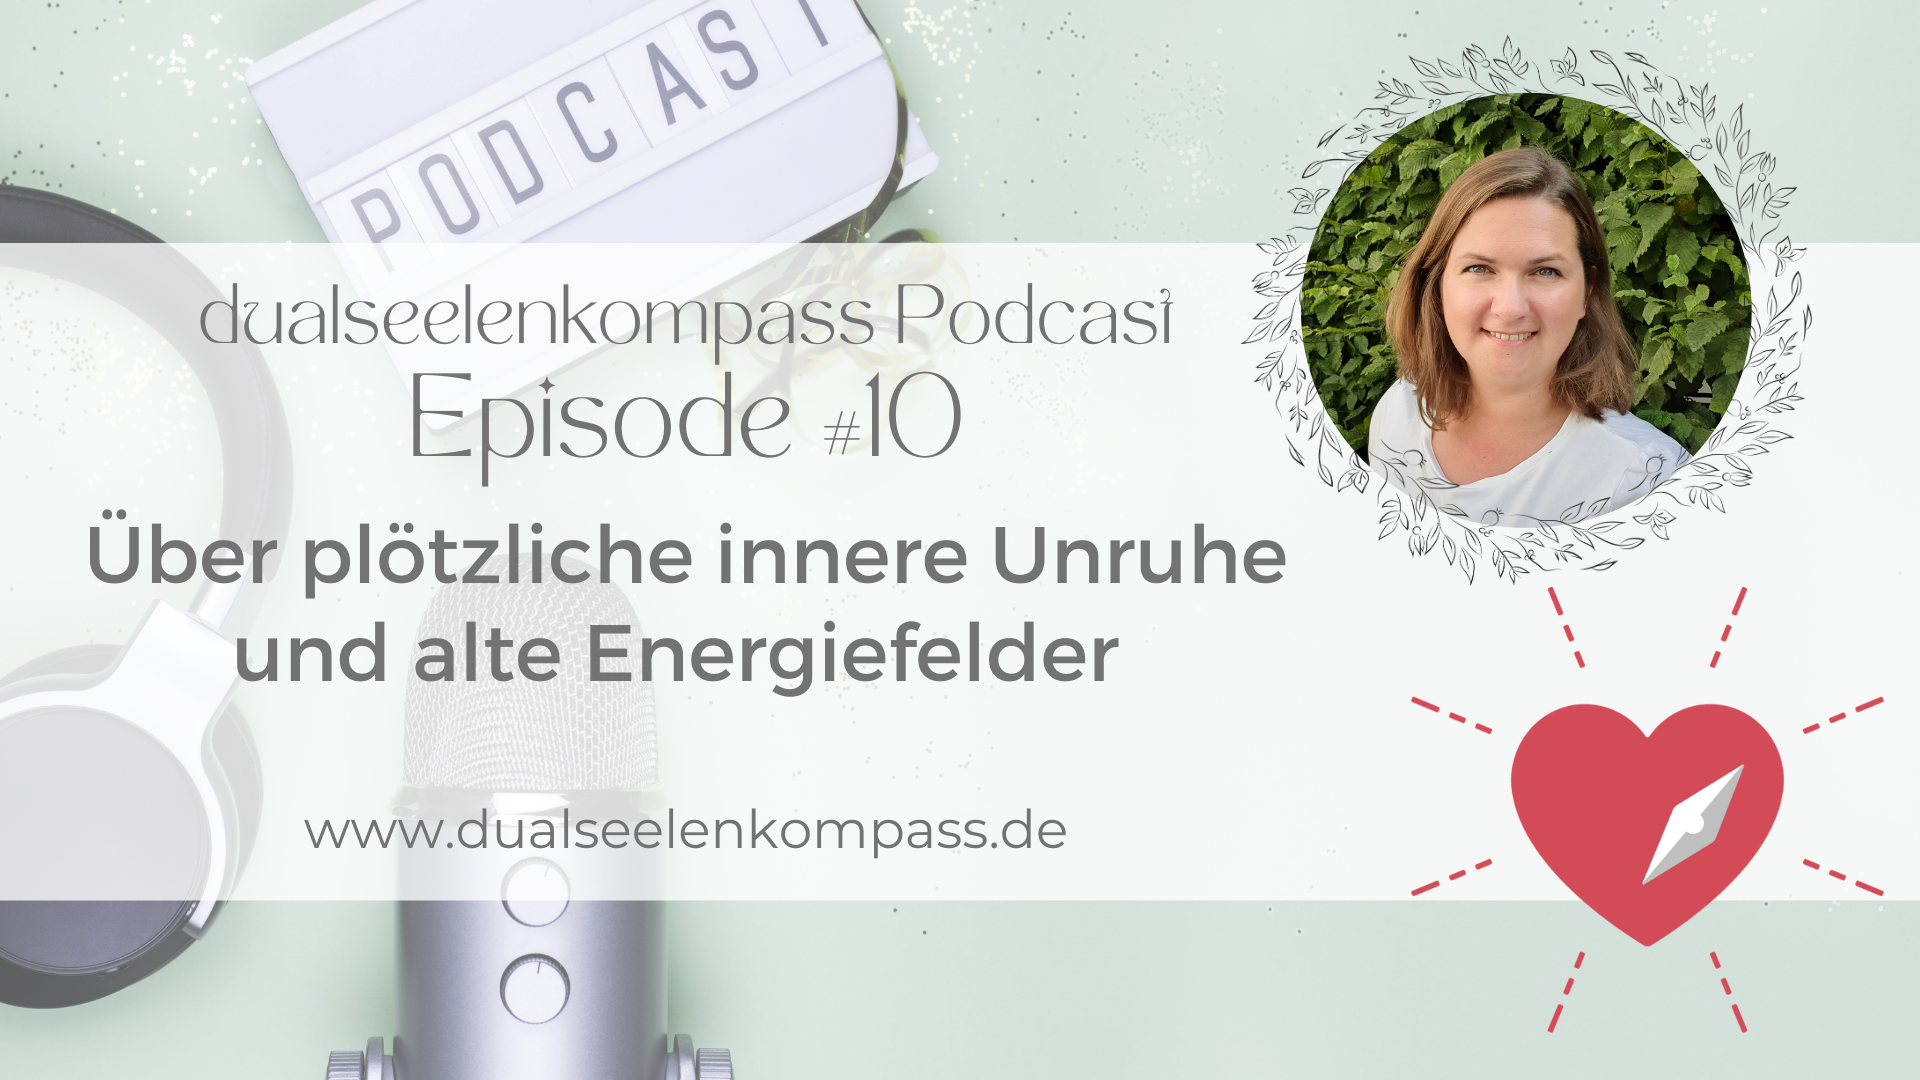 Podcast! Episode #10 - Über plötzliche innere Unruhe und alte Energiefelder